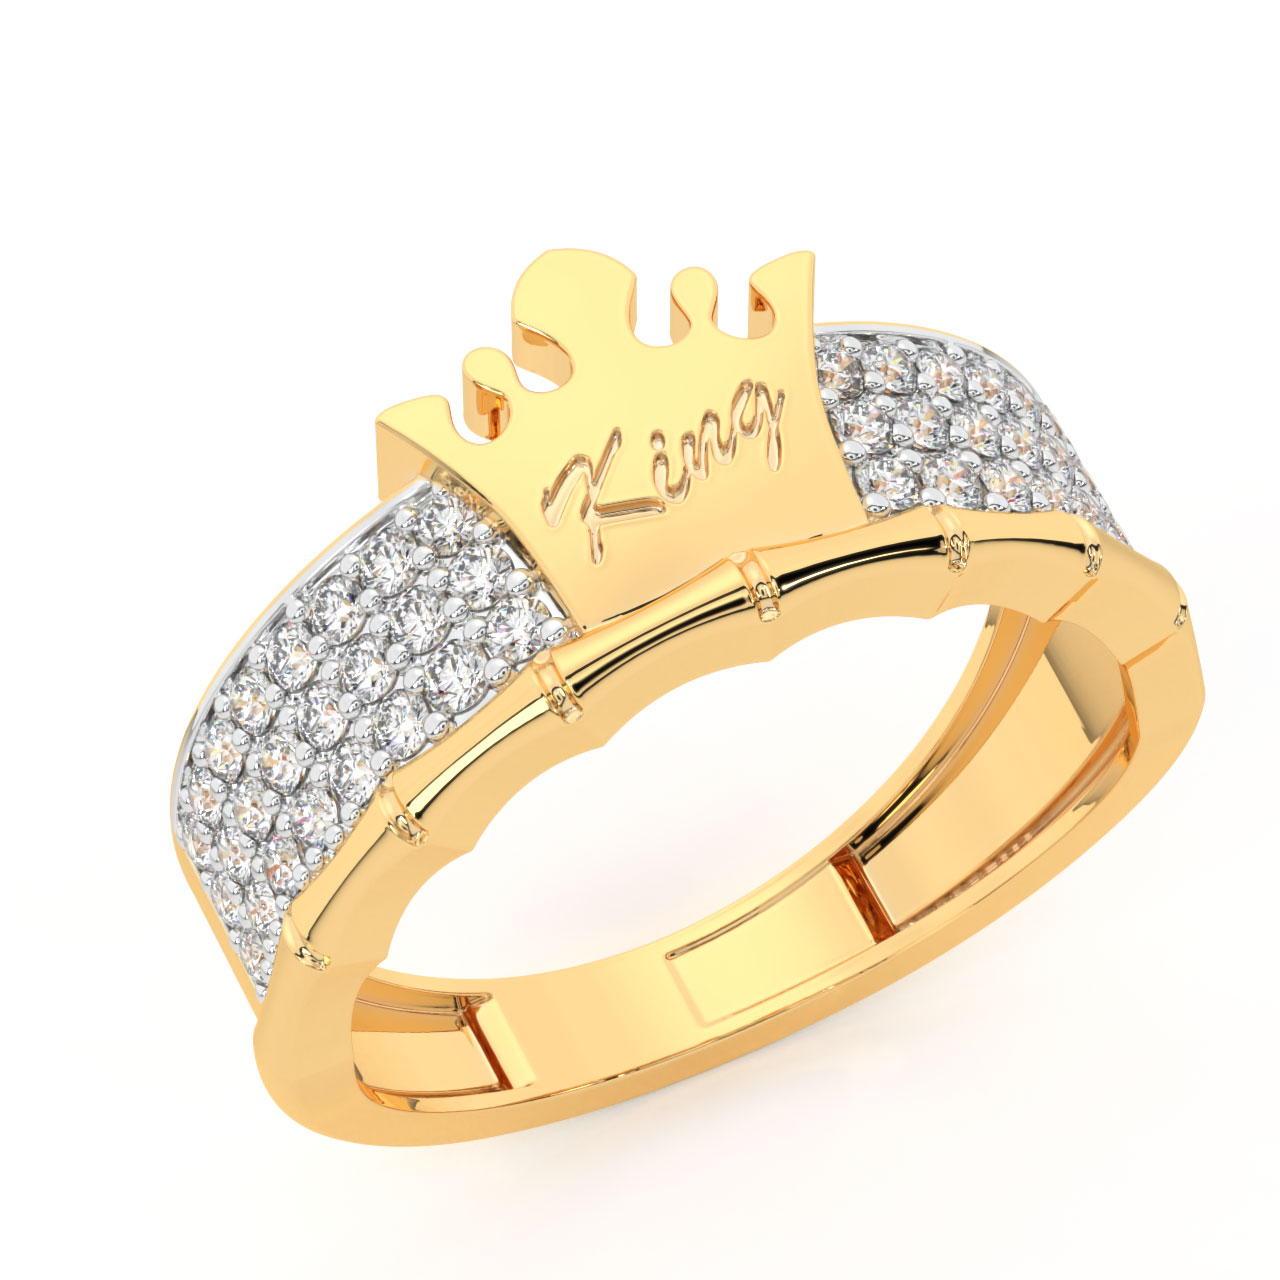 King Ring 4mm Basic Blue Ring – Super Polished Matt Finish Ring for Men &  Women, Wedding Bands for Him & Her, Stainless Steel Ring, K32 – Blue 7 |  Amazon.com